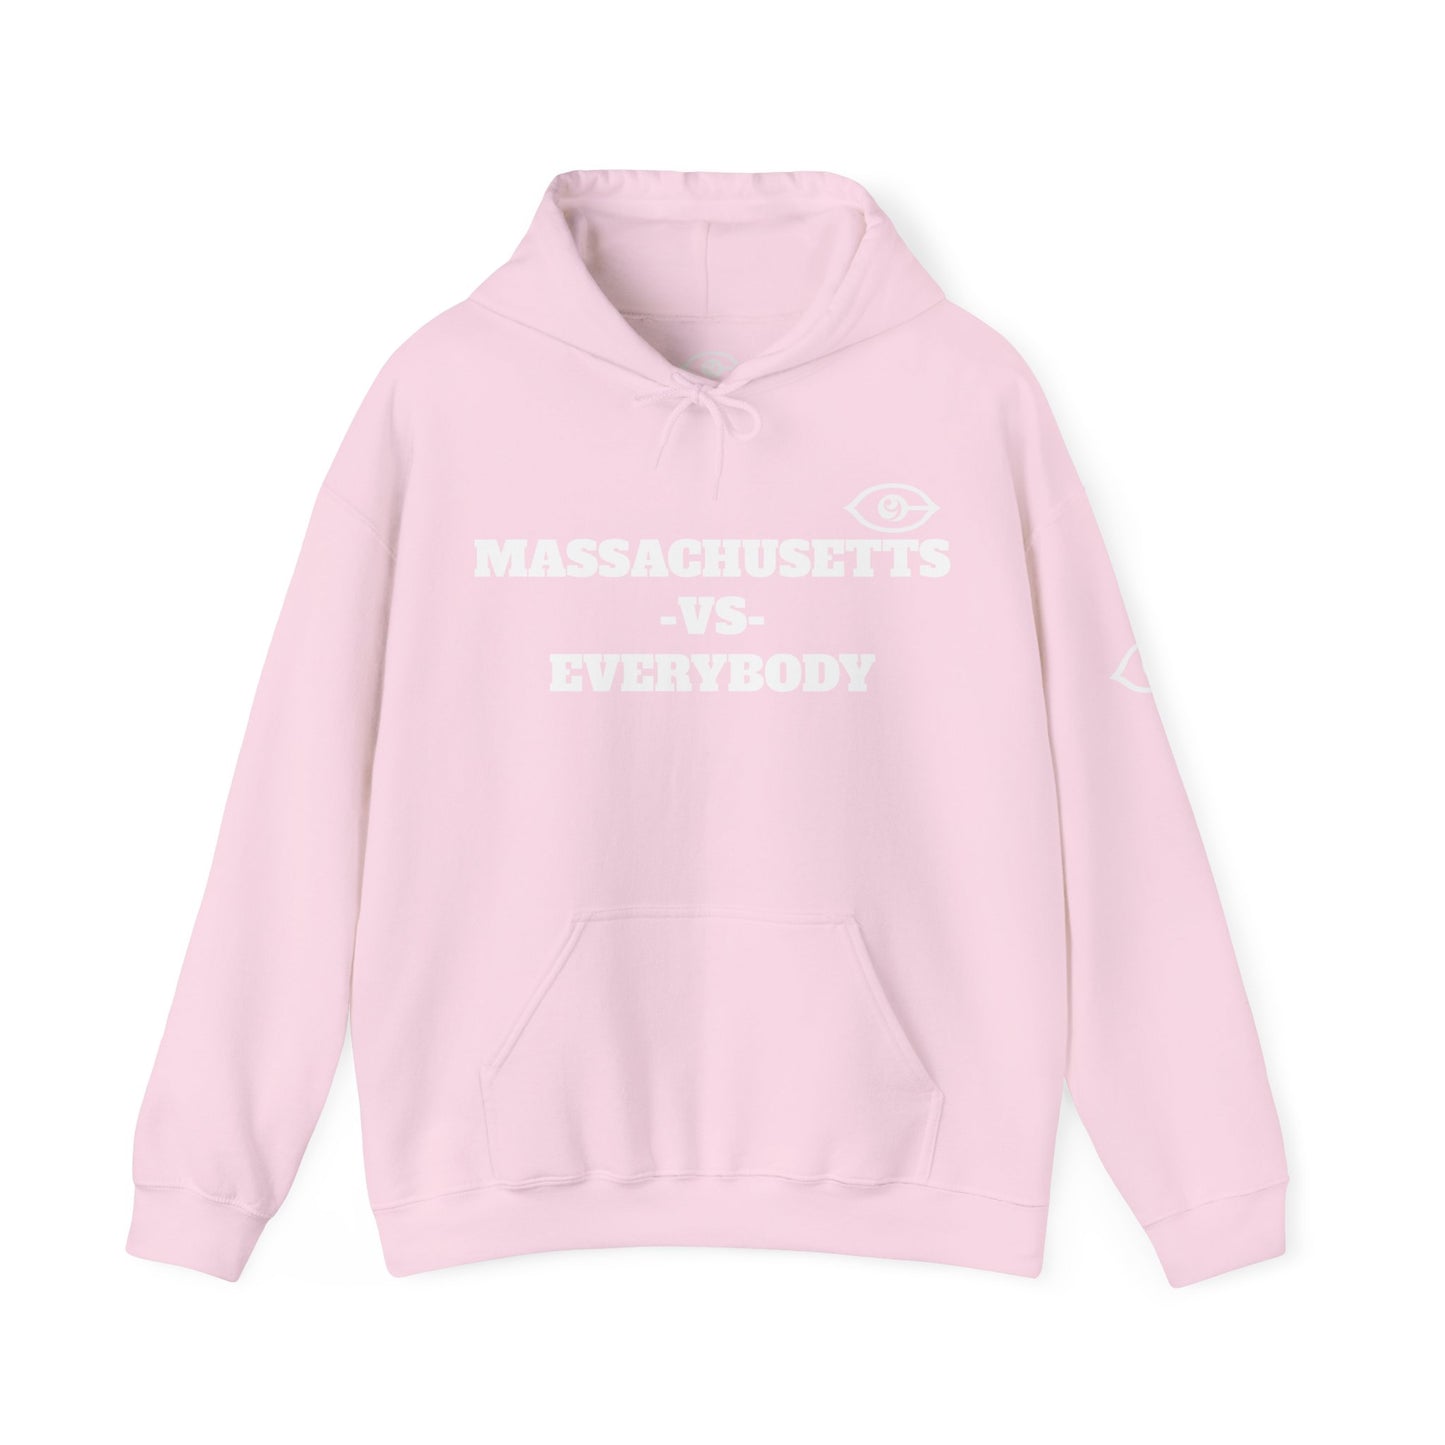 Massachusetts VS Everybody Unisex Heavy Blend™ Hoodie Sweatshirt